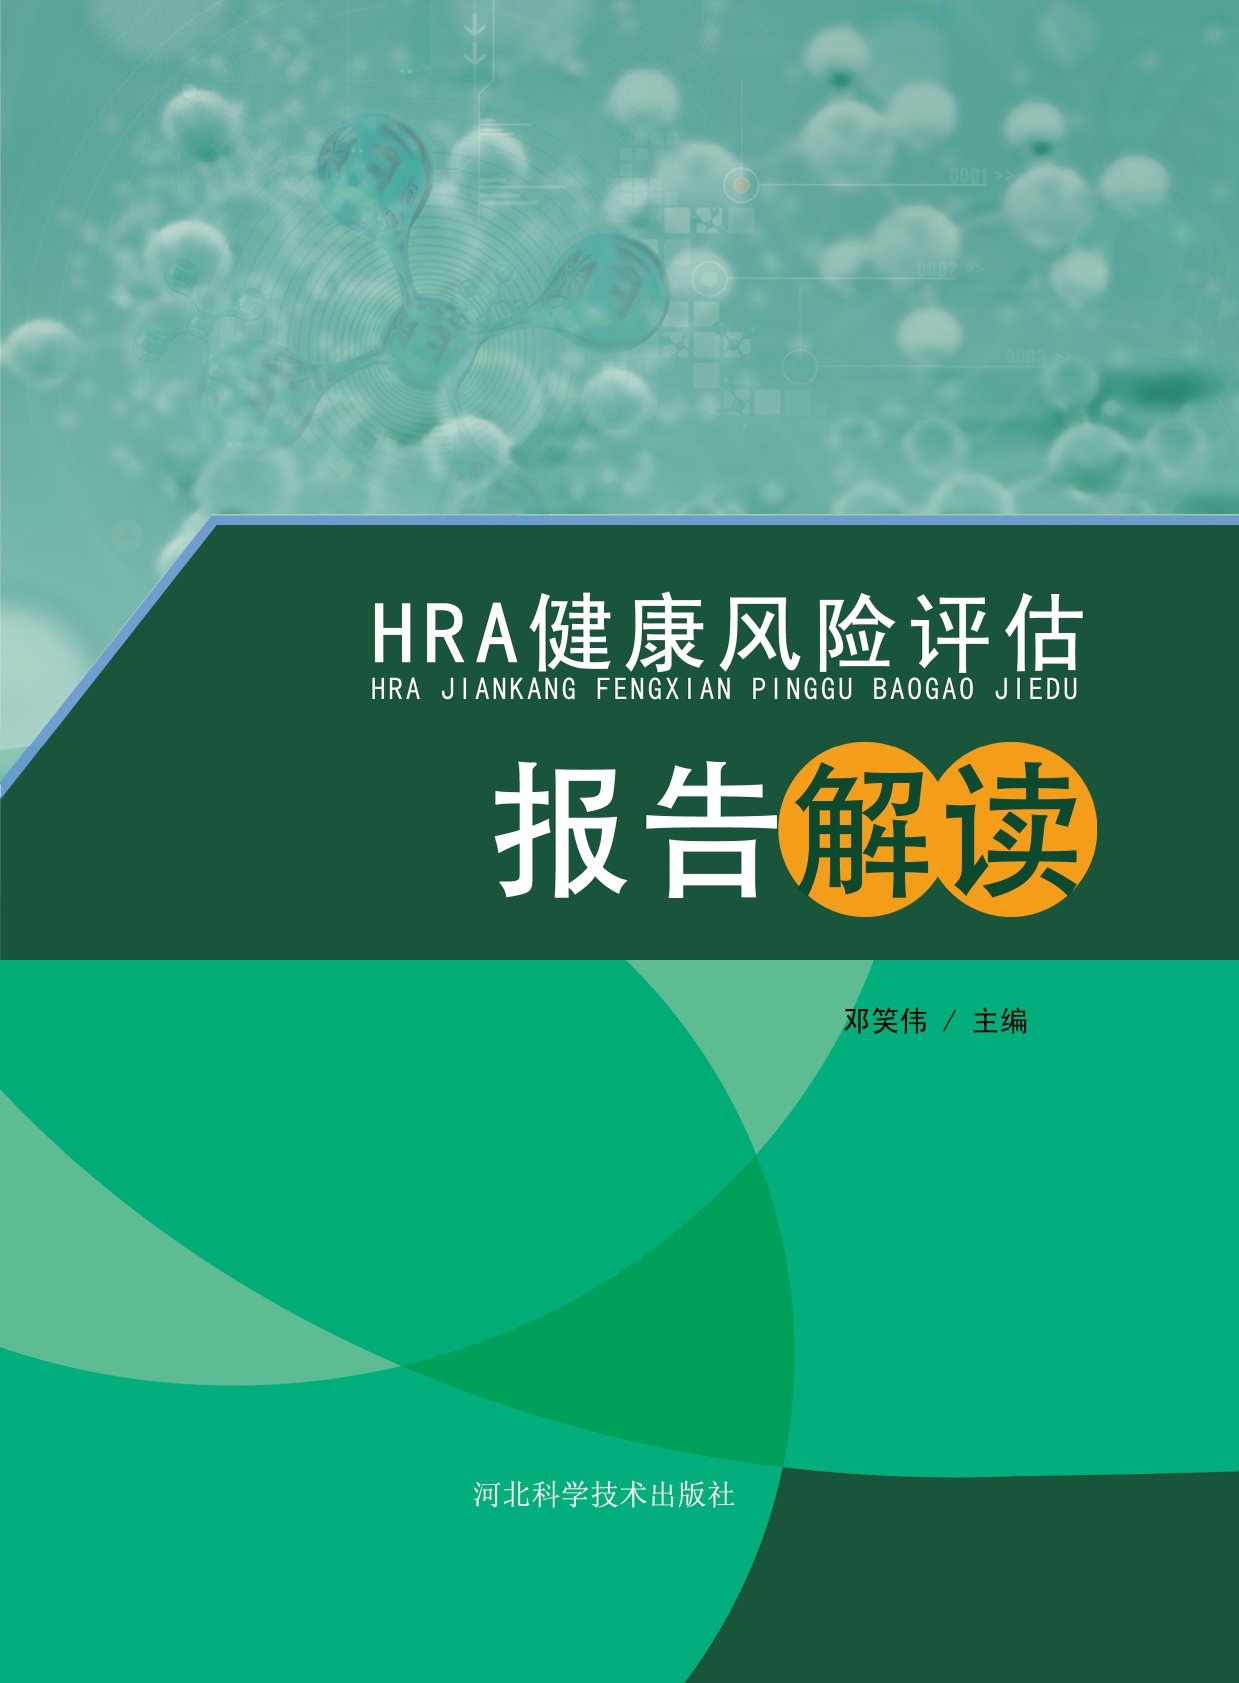 HRA健康风险评估报告解读